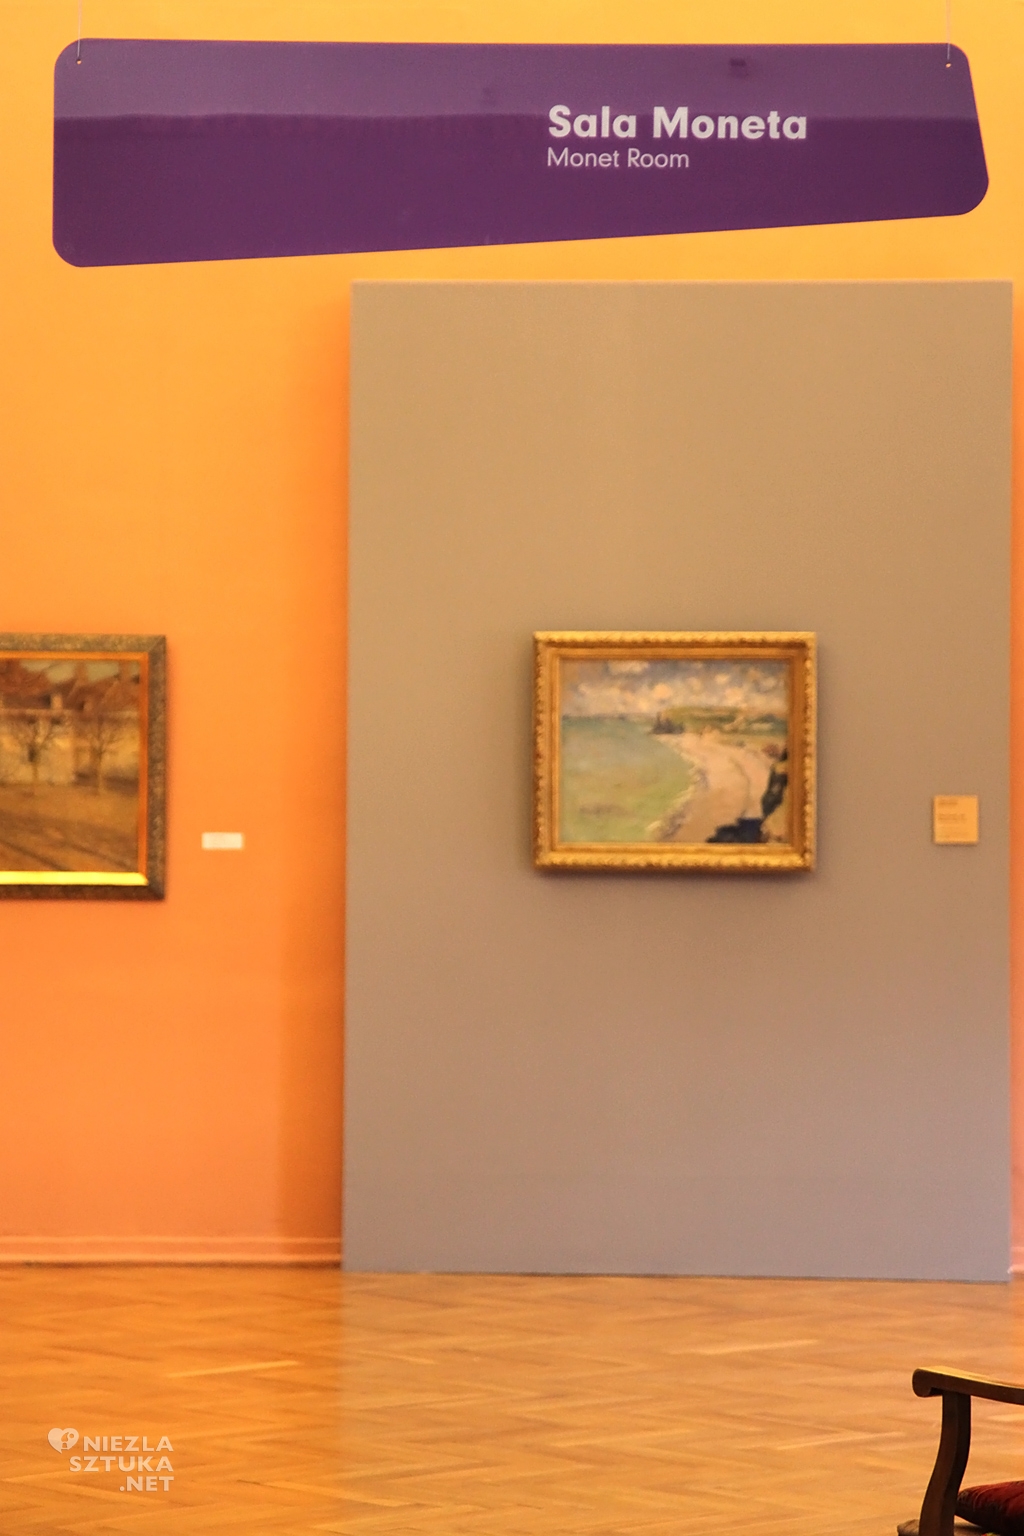 Sala Moneta w Muzeum Narodowym w Poznaniu, impresjonizm, polskie muzea, Niezła Sztuka